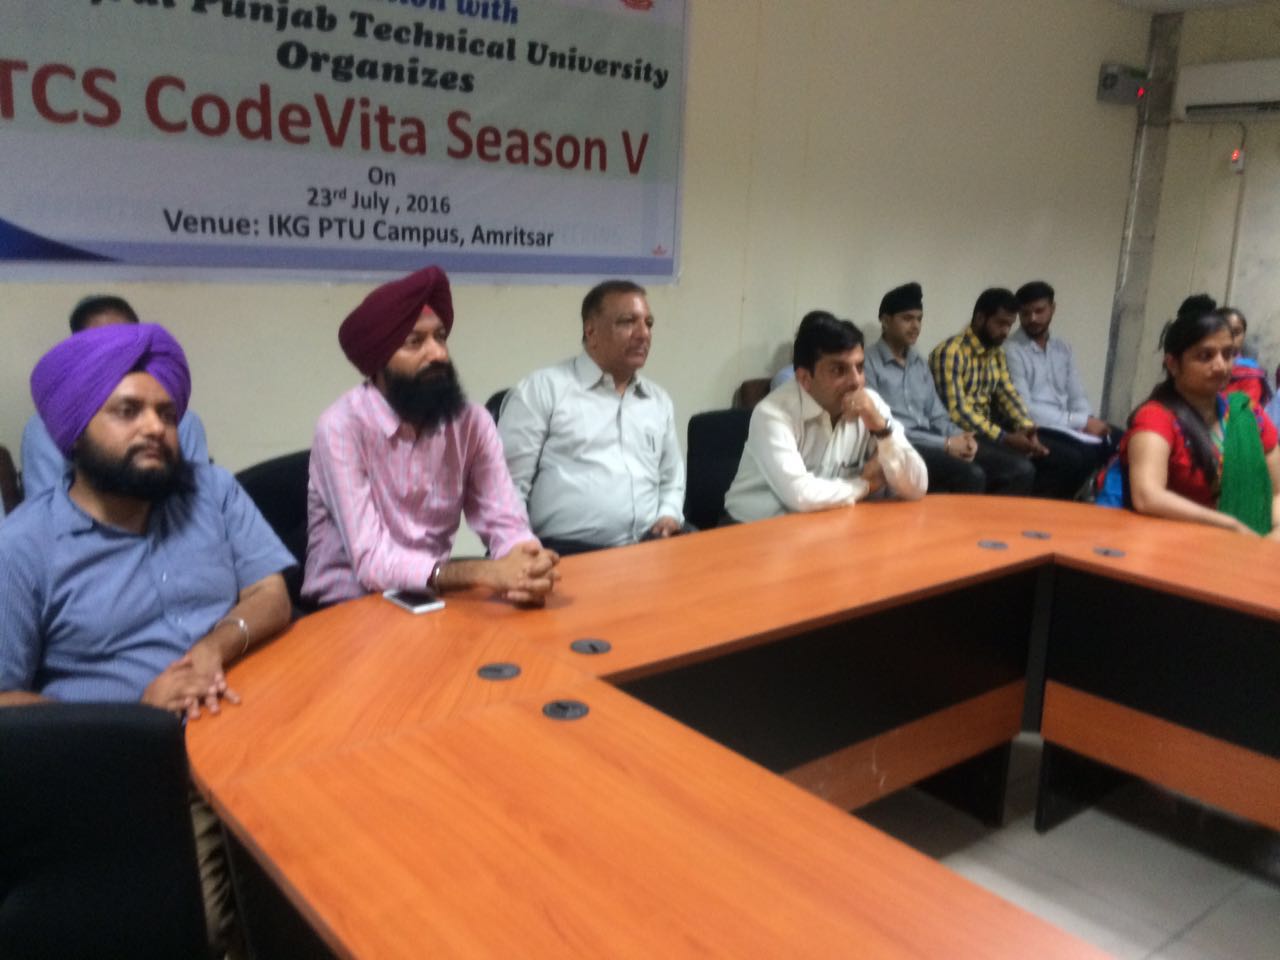 TCS Code Vita Season V Seminar conducted on 23rd July 2016